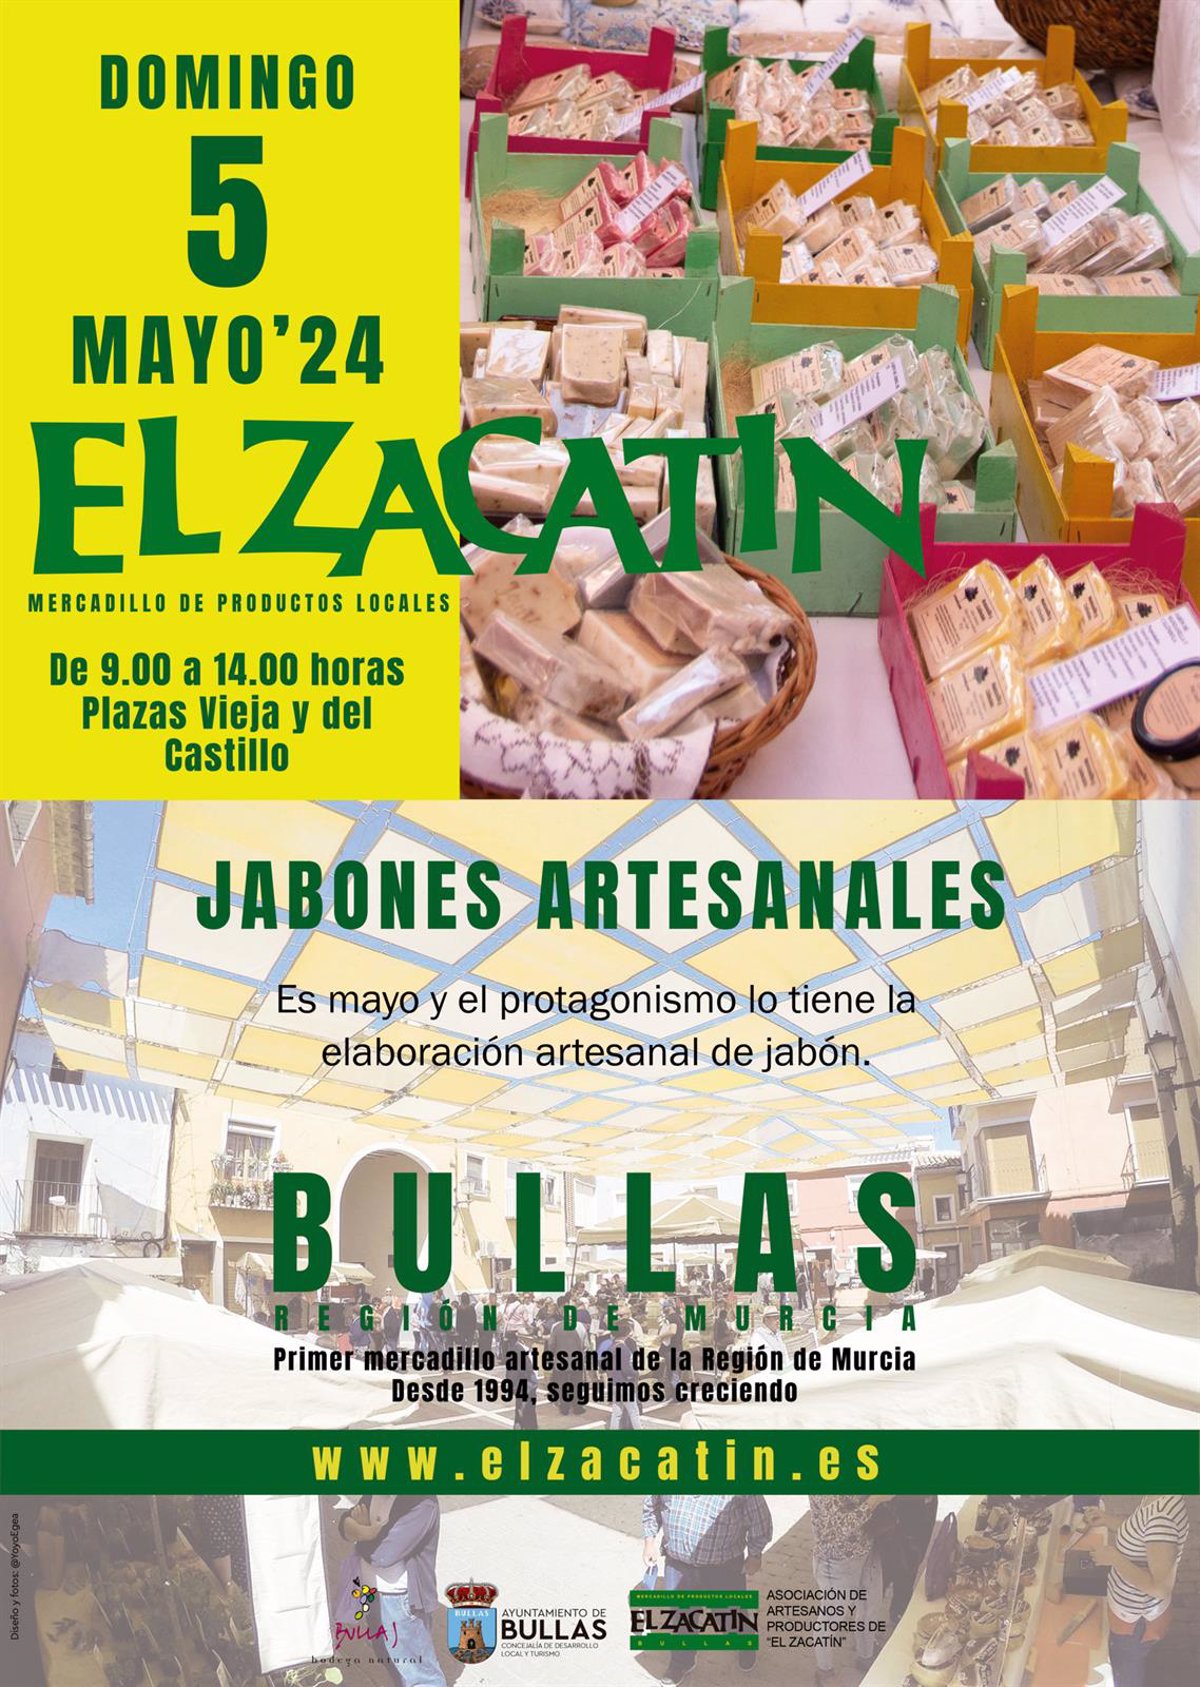  El Zacatín  de Bullas dedica este mes de mayo la demostración central a la elaboración de jabones artesanales